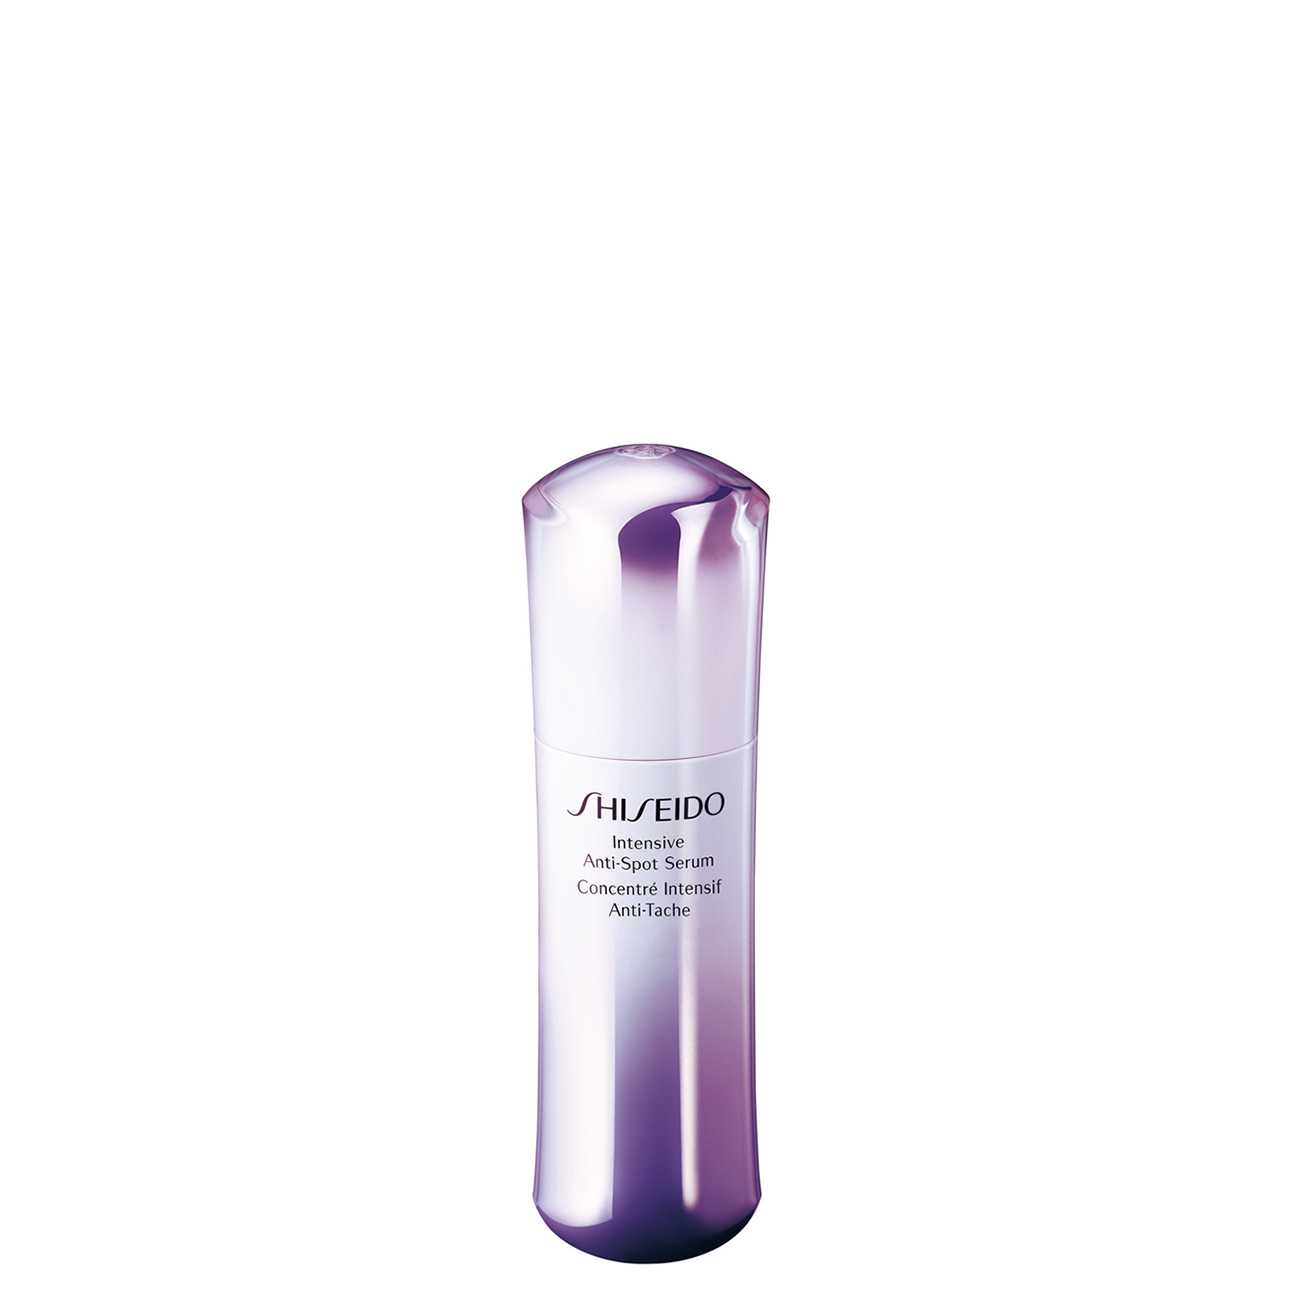 Masca tratament Shiseido INTENSIVE ANTI SPOT SERUM 30 ML cu comanda online